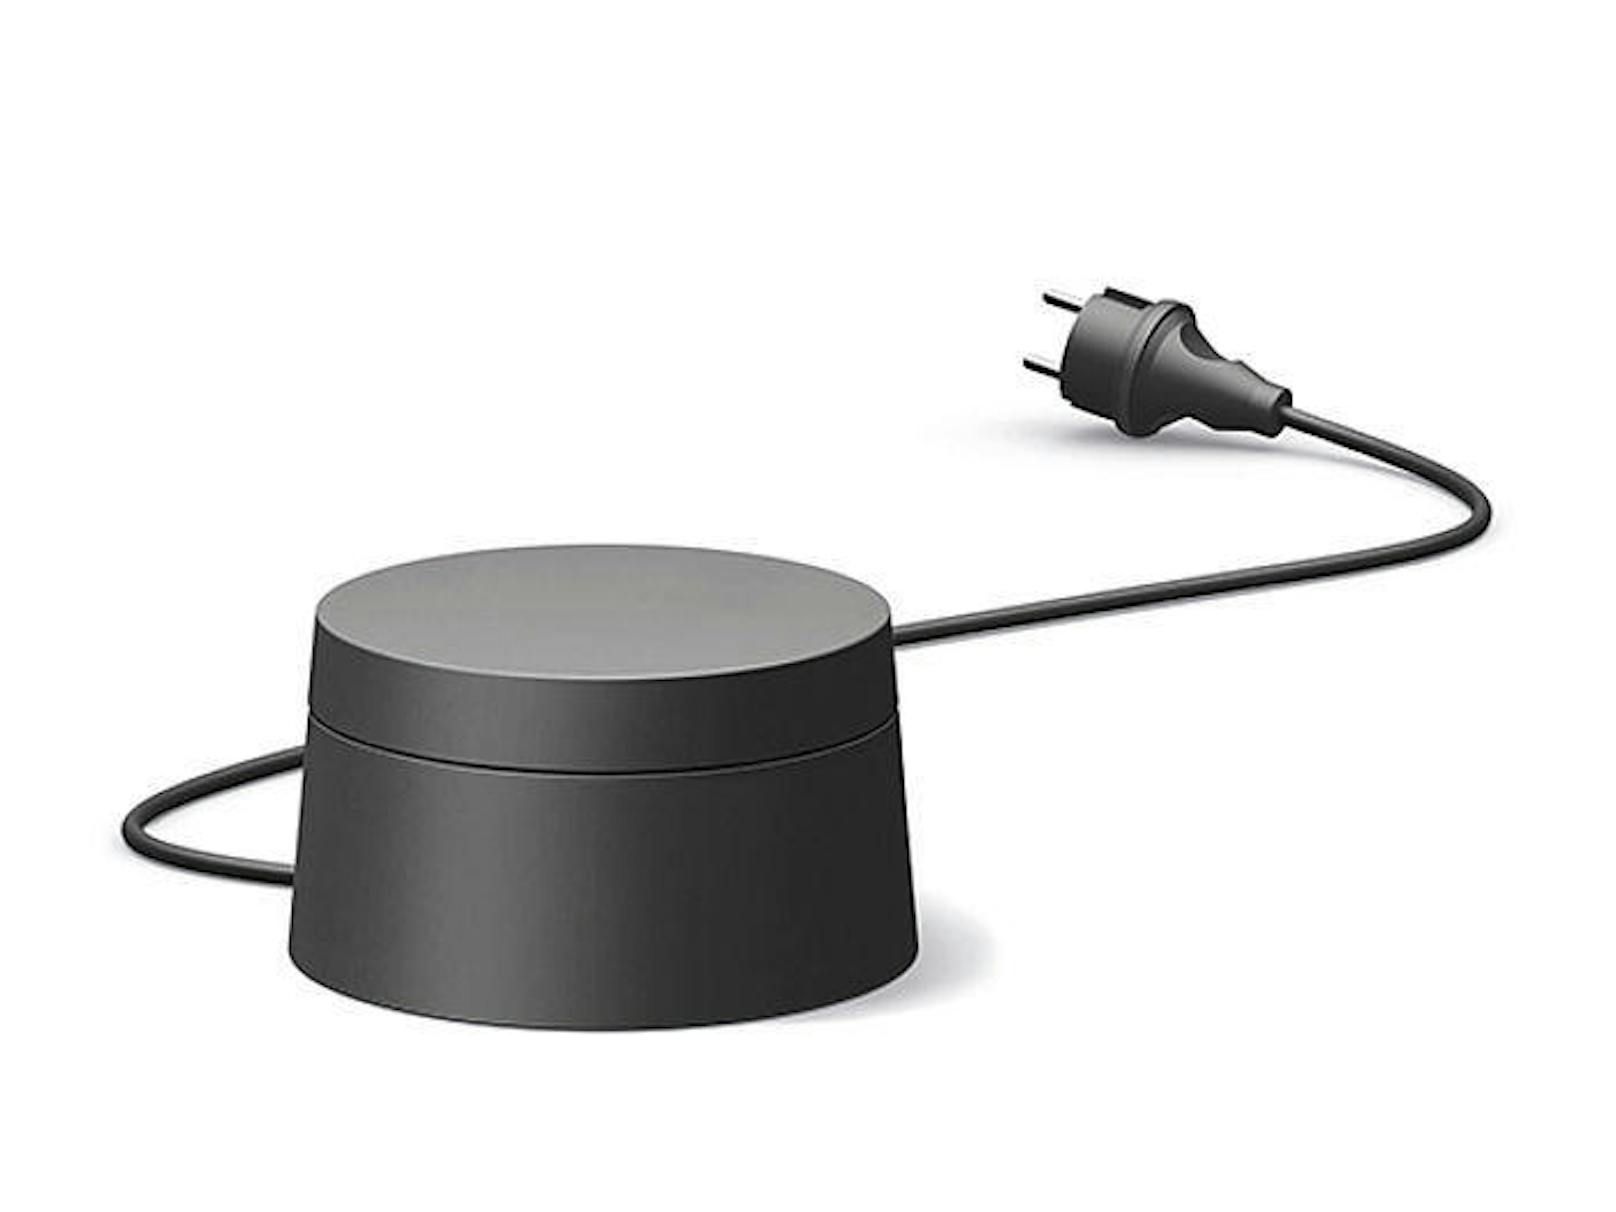 Was ist die kleine schwarze Box namens WiFi Outdoor überhaupt? Es handelt sich um dLAN-zu-WLAN-Adapter, der über ein fünf Meter langes Stromkabel versorgt wird und für das WLAN das 2,4-GHz-Band nutzt.